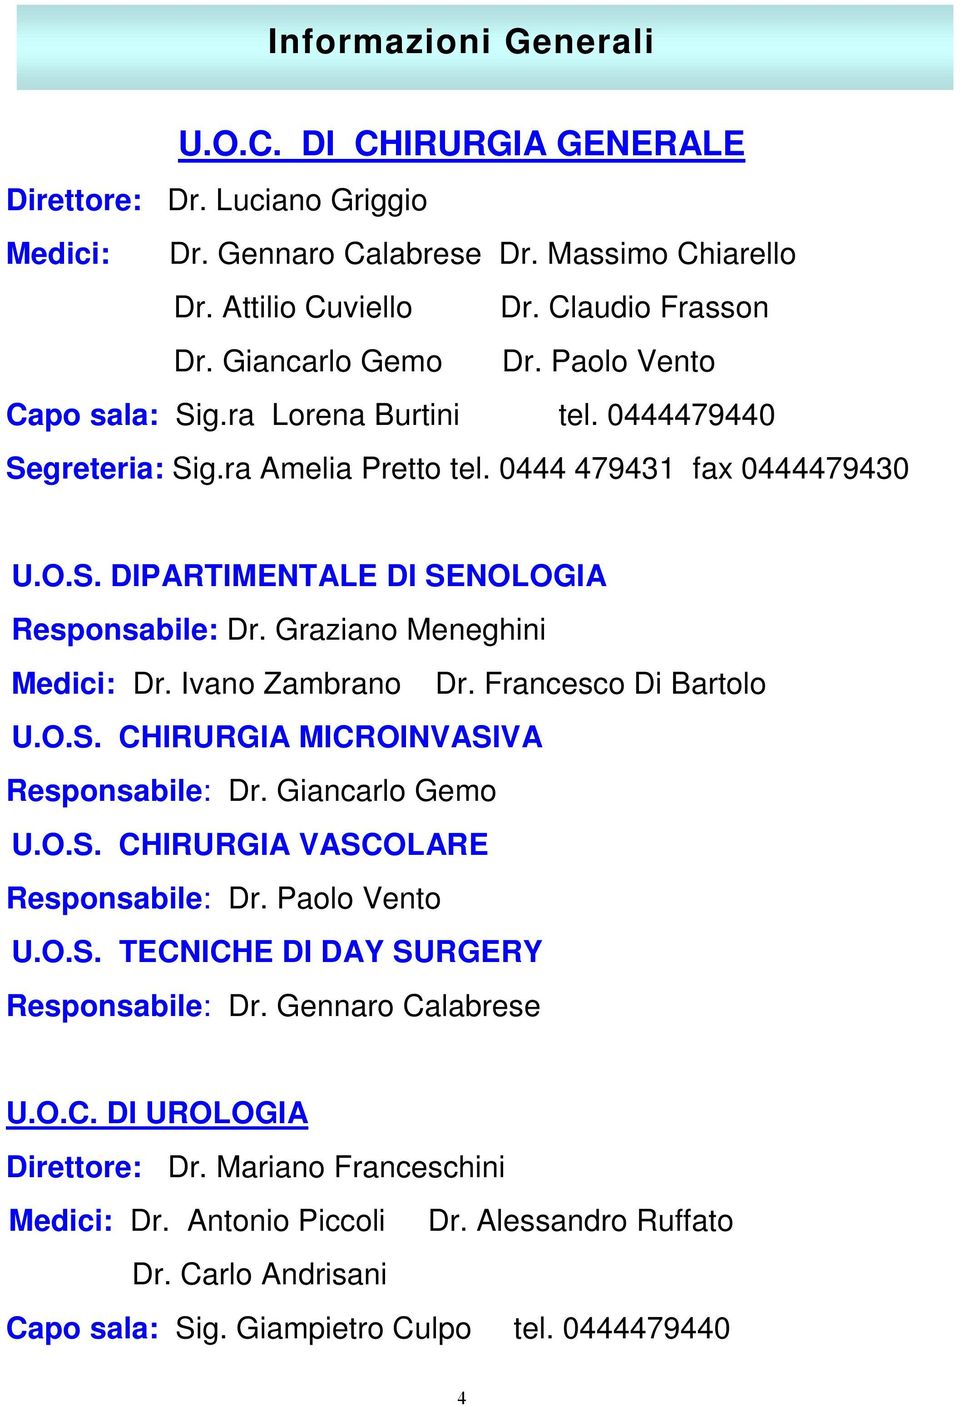 Graziano Meneghini Medici: Dr. Ivano Zambrano Dr. Francesco Di Bartolo U.O.S. CHIRURGIA MICROINVASIVA Responsabile: Dr. Giancarlo Gemo U.O.S. CHIRURGIA VASCOLARE Responsabile: Dr. Paolo Vento U.O.S. TECNICHE DI DAY SURGERY Responsabile: Dr.